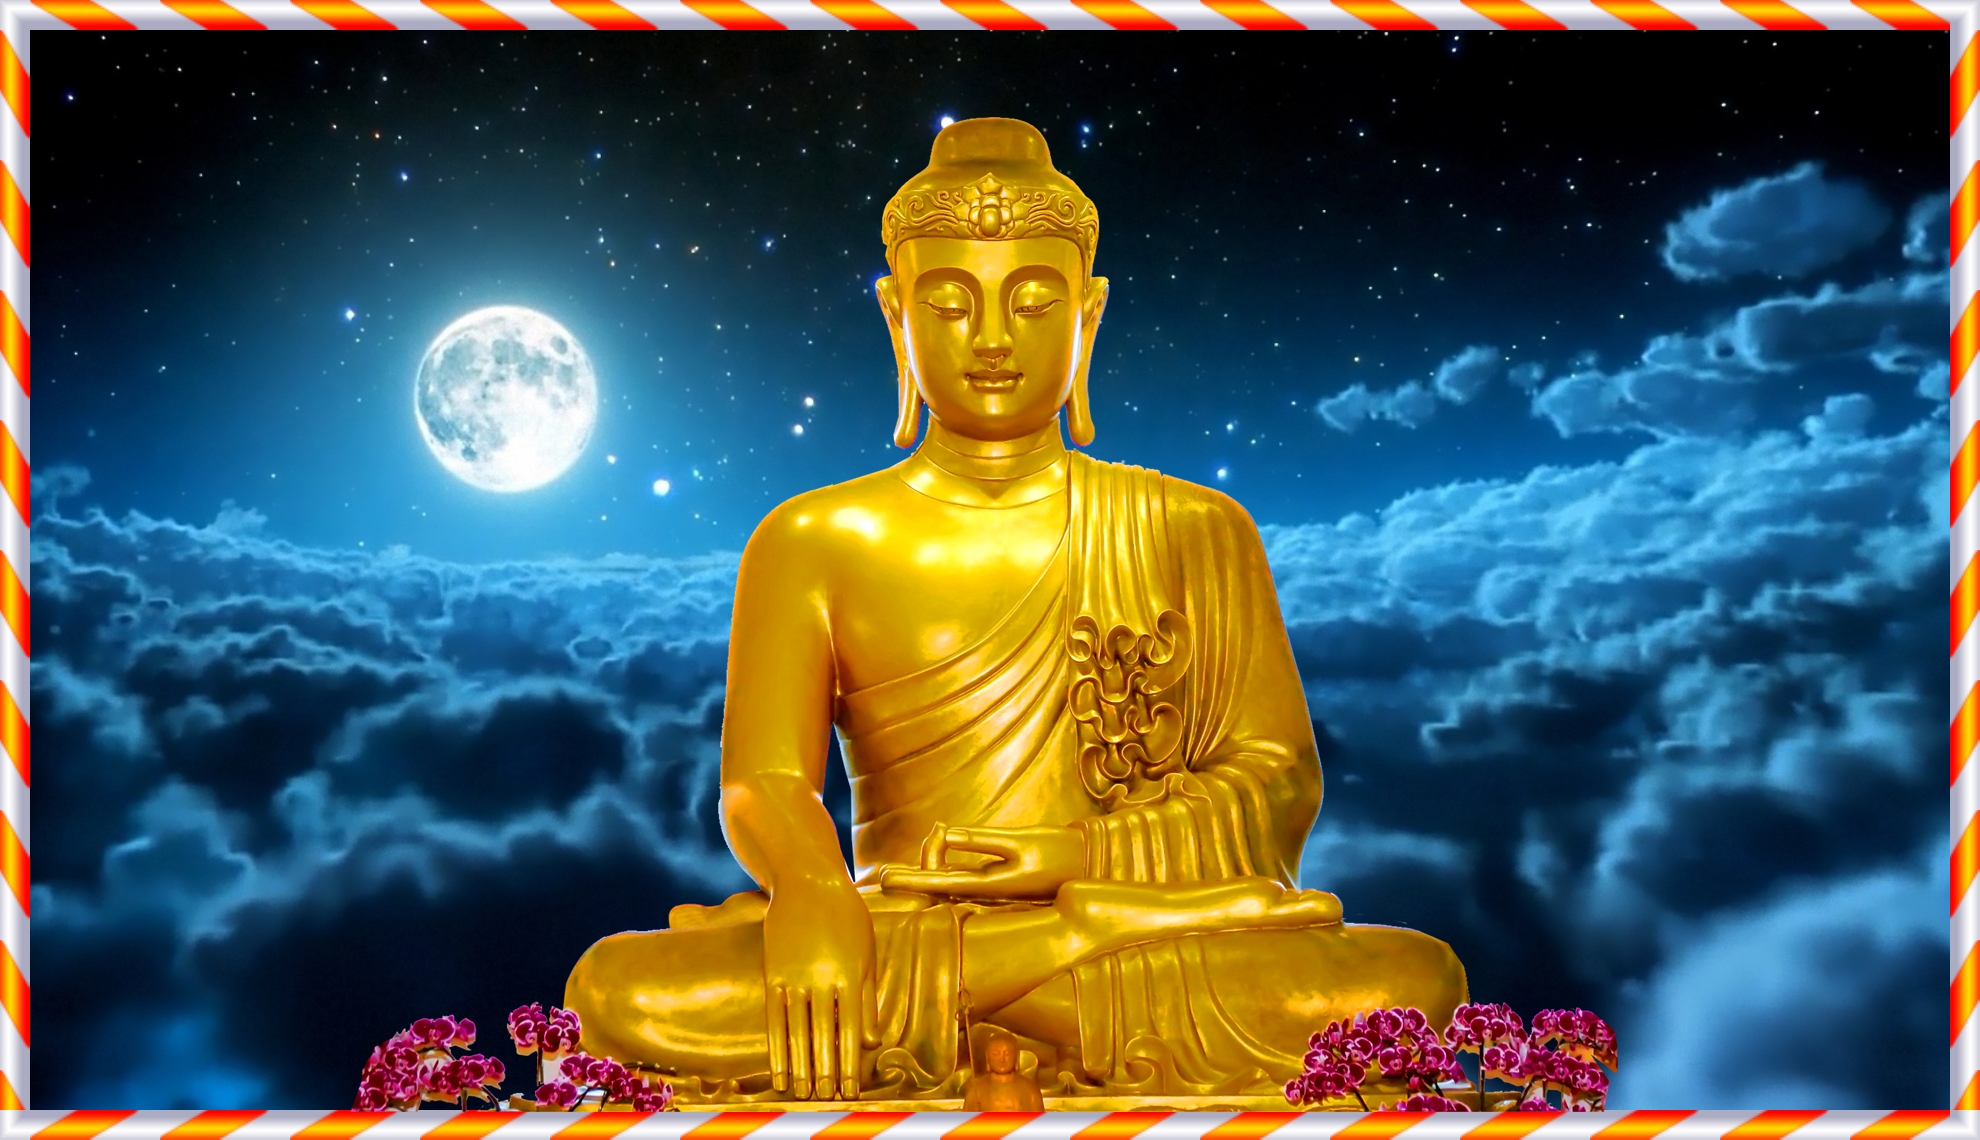 Hình Phật Thích Ca: Hình ảnh của Phật Thích Ca luôn sáng lấp lánh và tràn đầy niềm tin. Mỗi chi tiết nhỏ trong bức tranh đều mang đến thông điệp sâu xa về tình thương và trí tuệ. Hãy để mình lấn sâu vào trong bức tranh Phật Thích Ca và tìm thấy lối đi của mình trong cuộc sống.